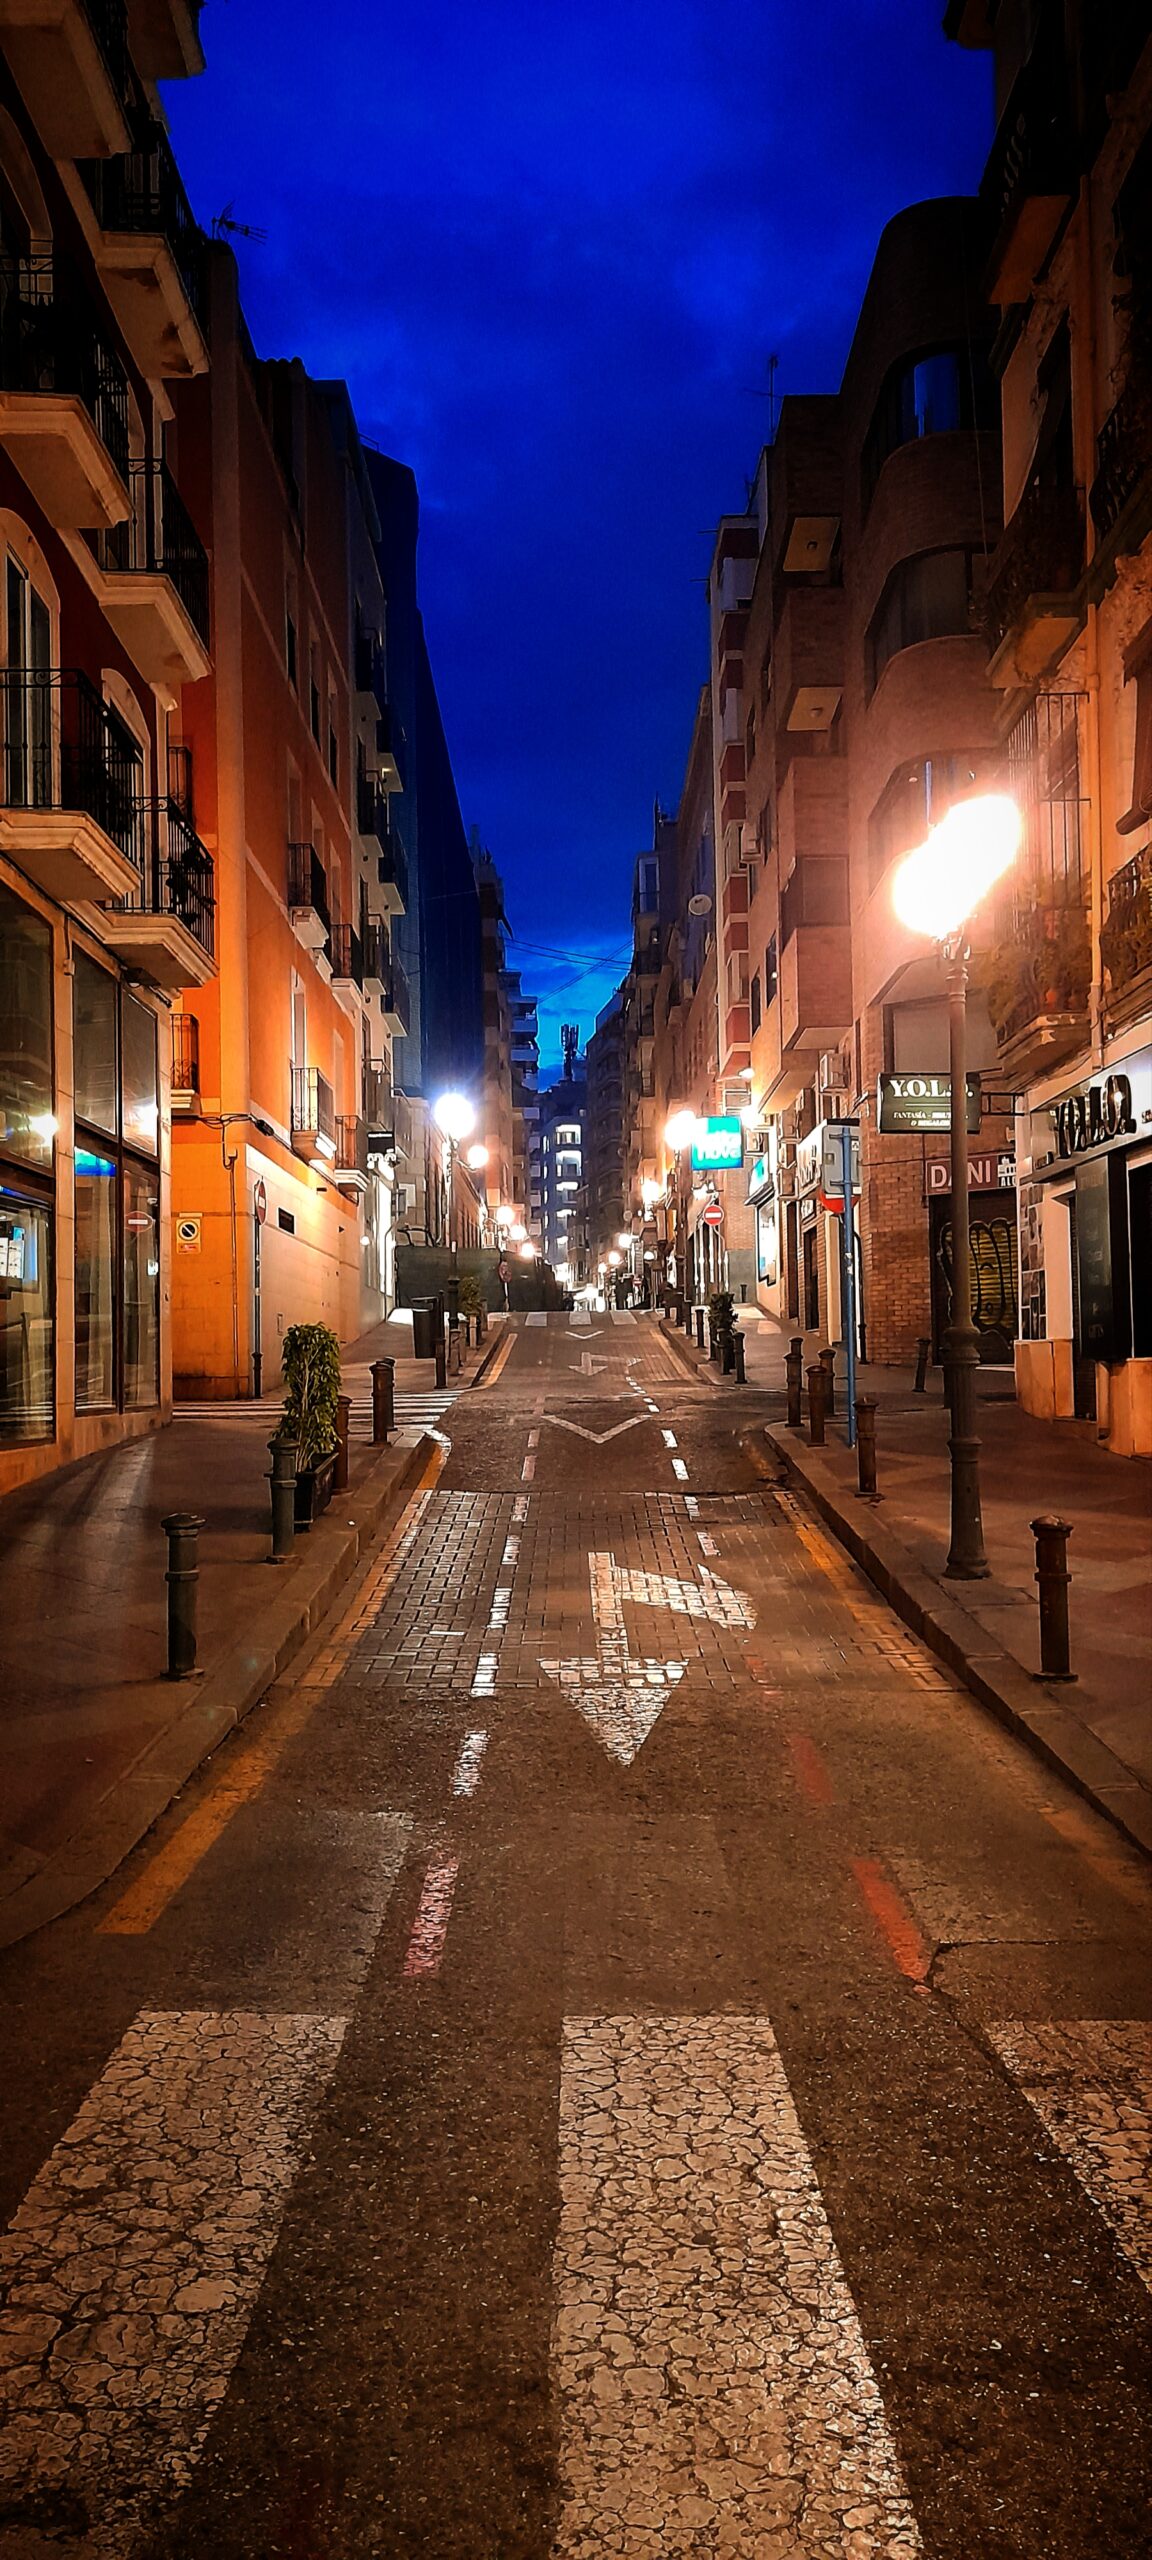 A narrow street in Alicante center